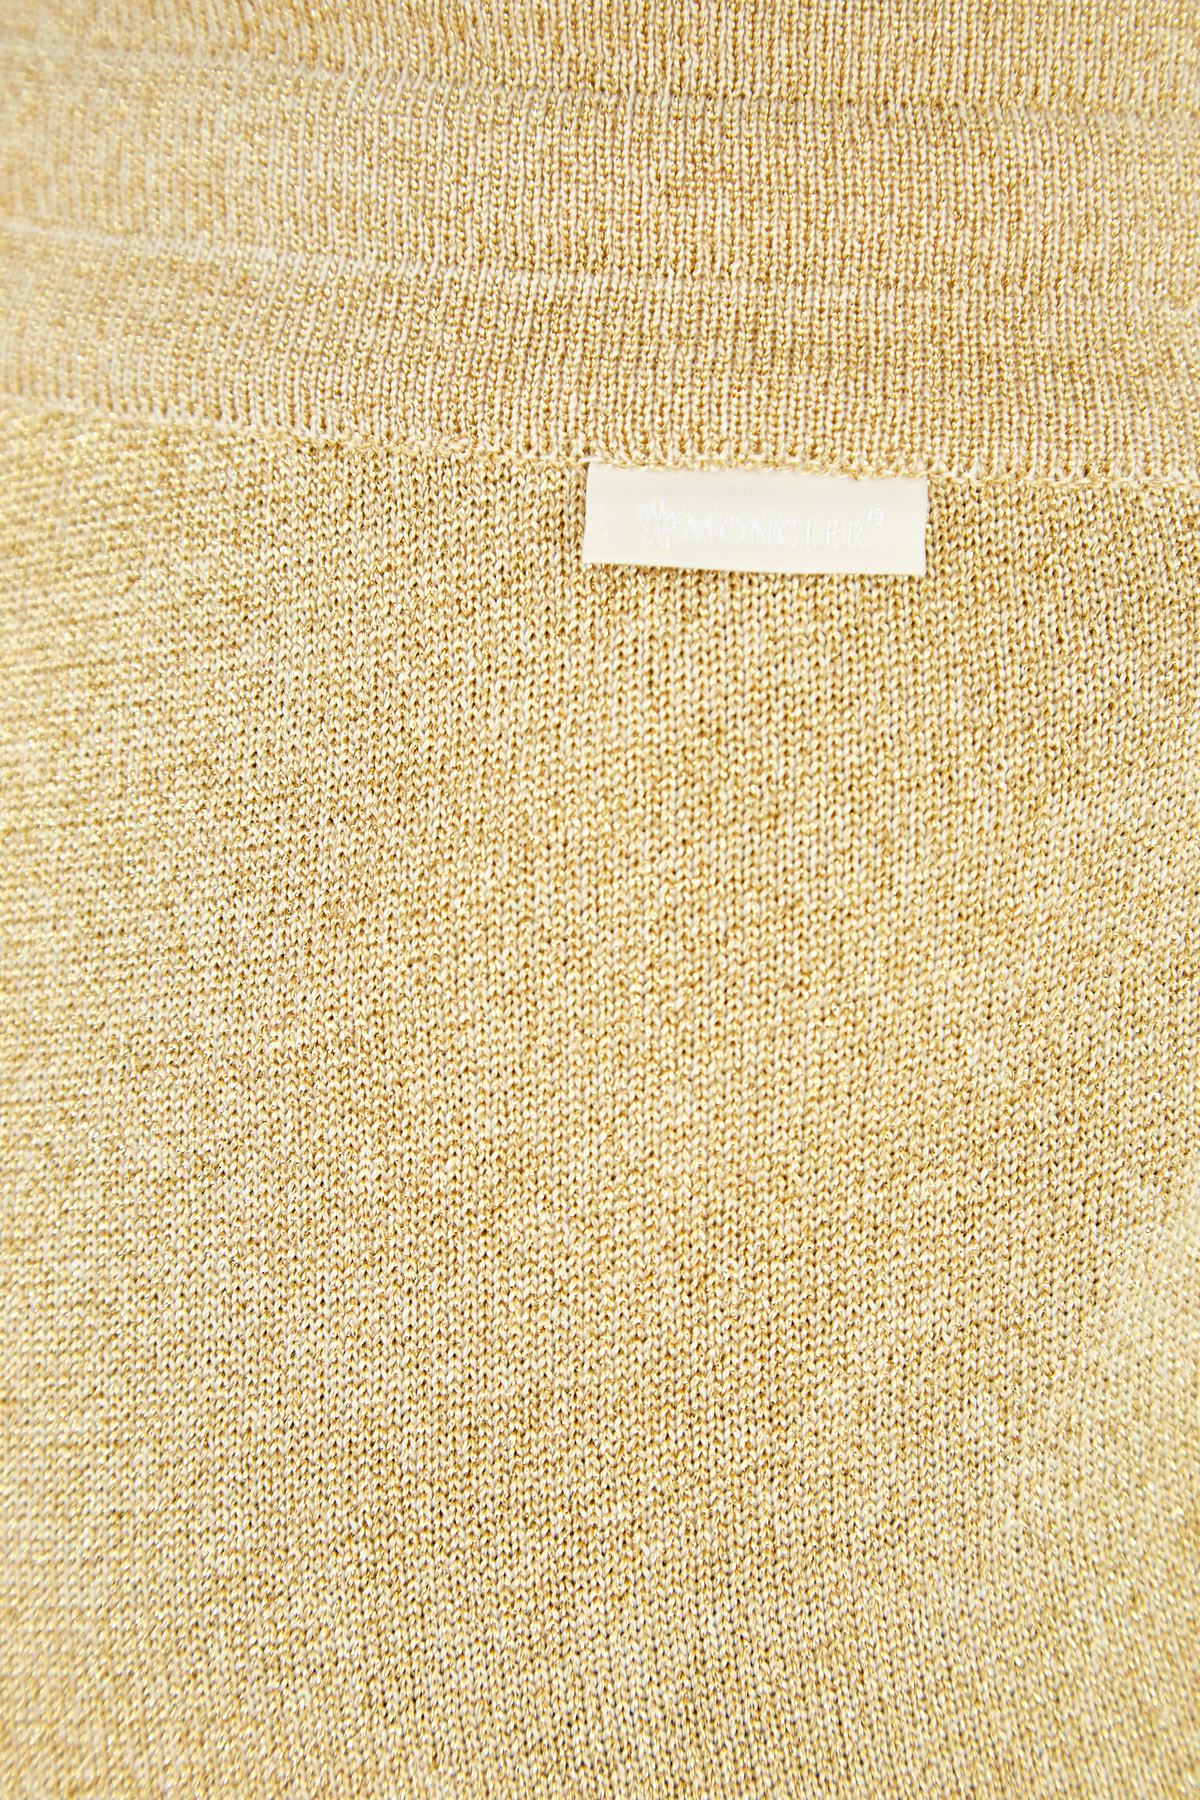 Широкие брюки из мерцающей пряжи с люрексом золотистого цвета MONCLER, размер 42 - фото 6